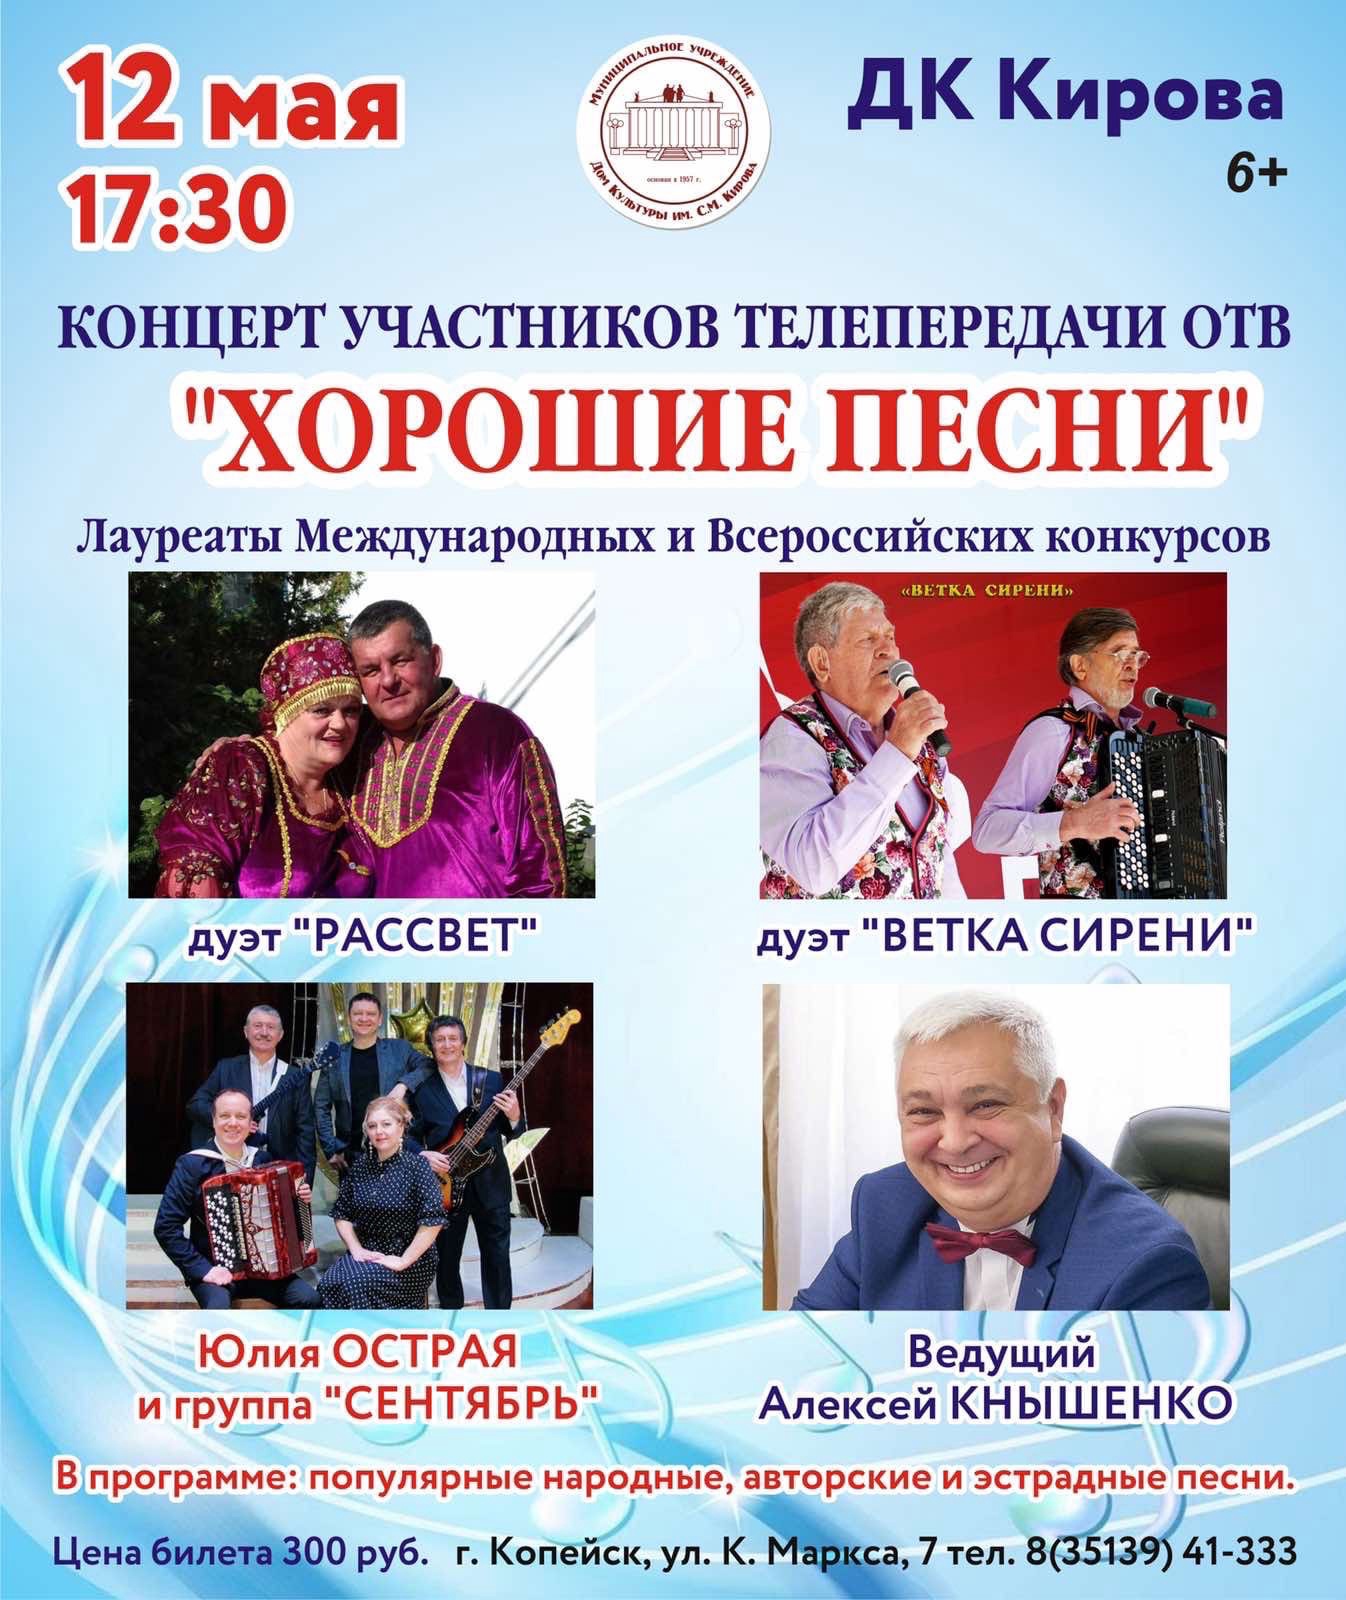 Концерт уральских звезд в ДК Кирова